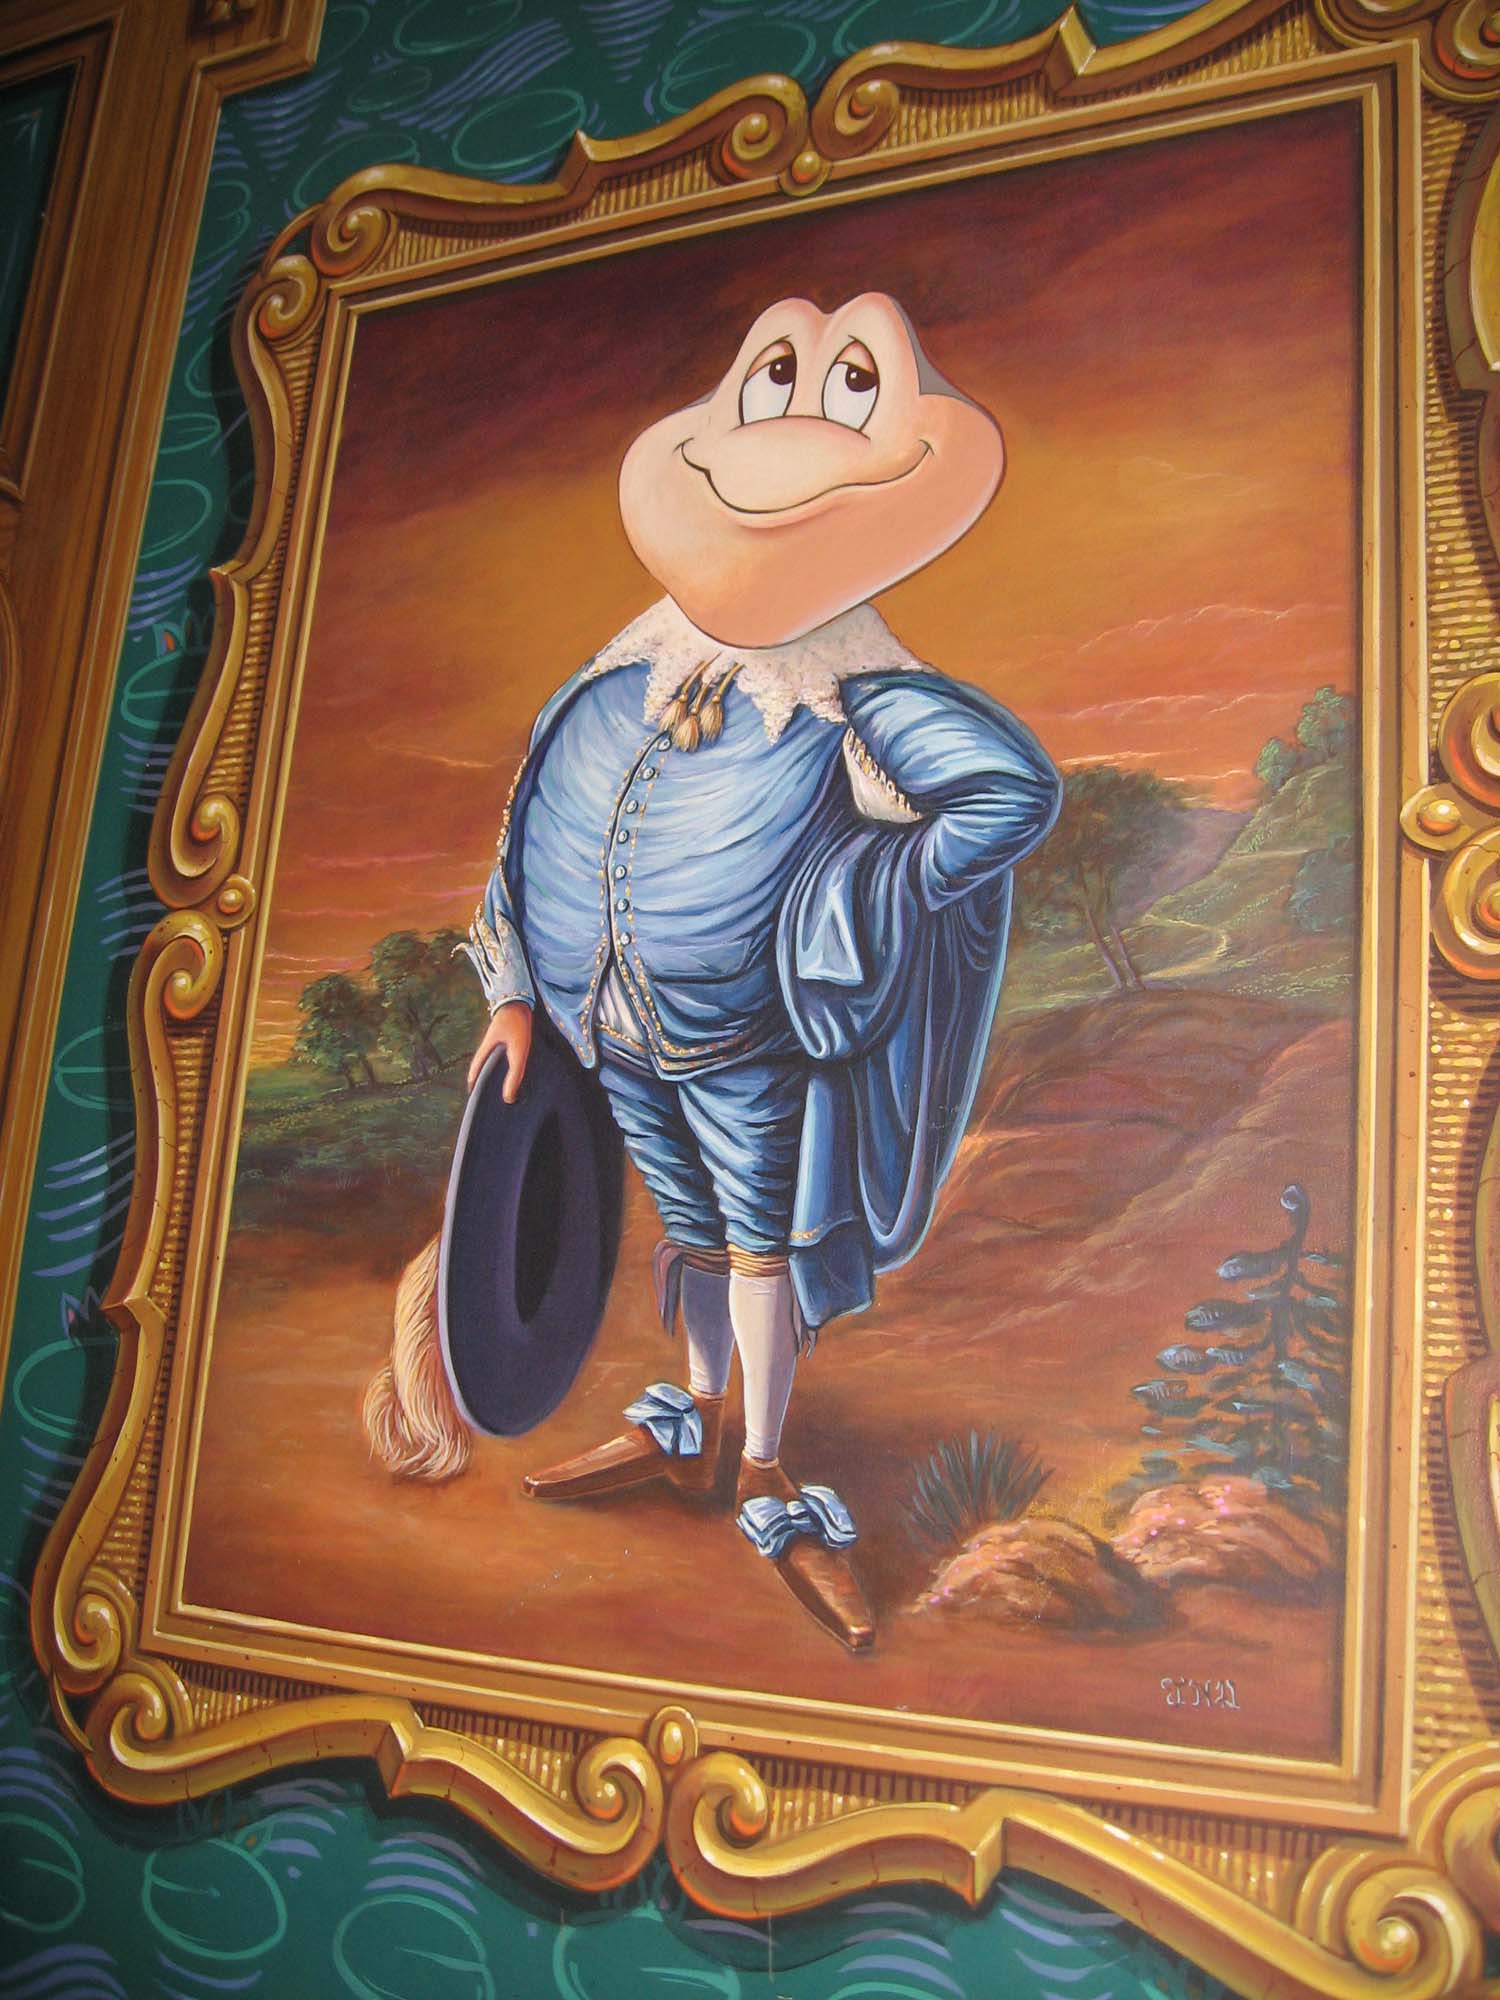 Disneyland - Mr. Toad's Wild Ride portrait